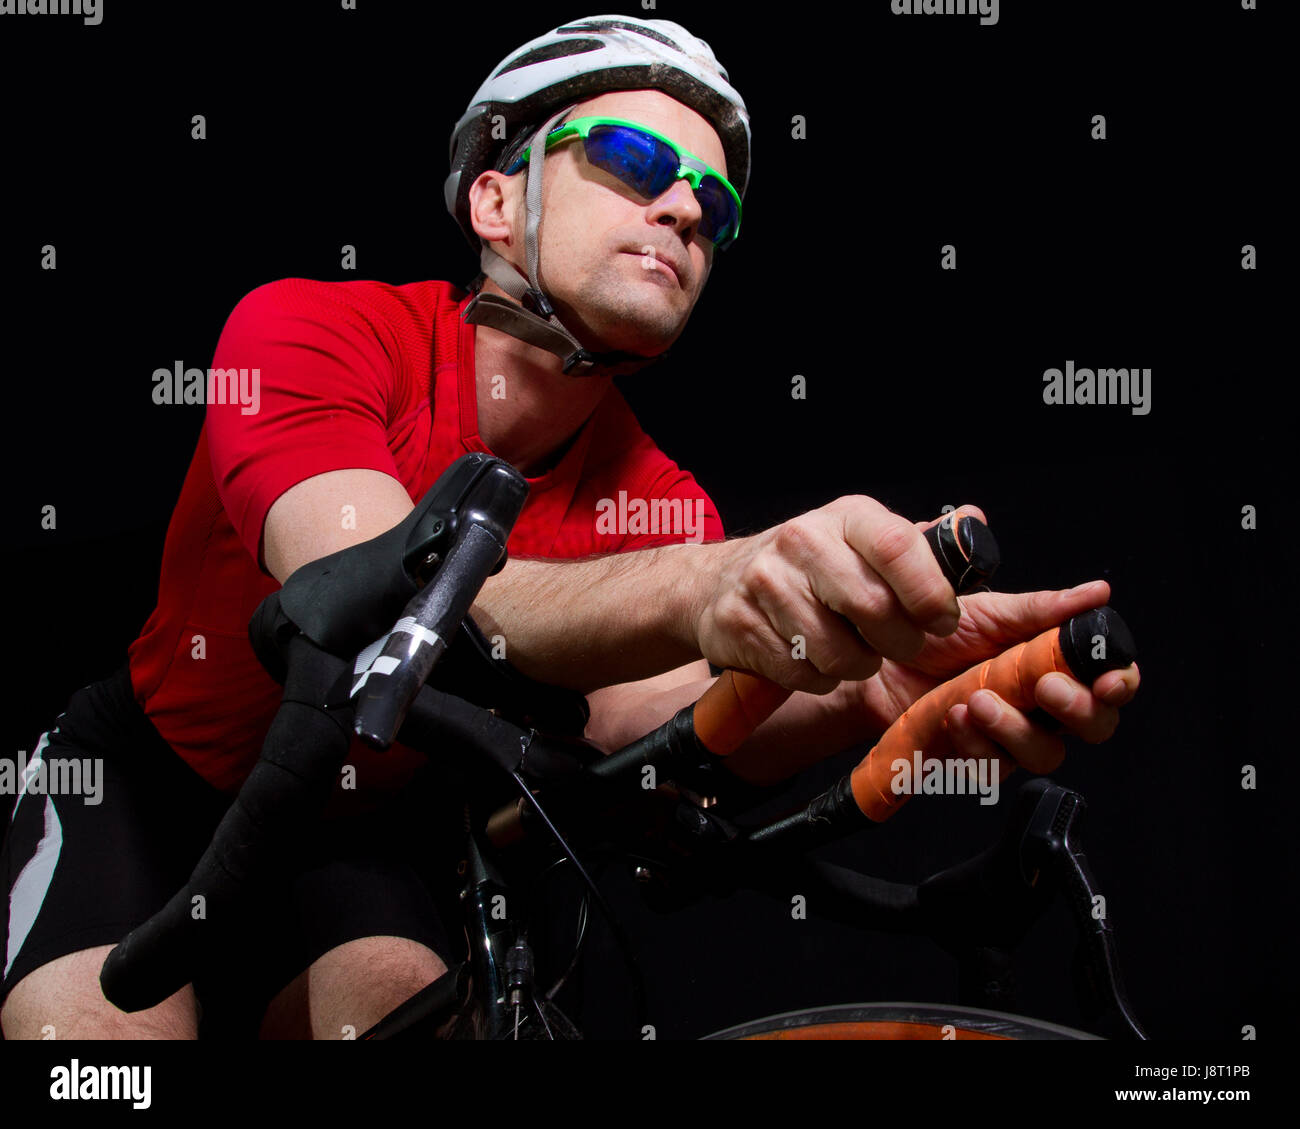 triathlete on bicycle Stock Photo